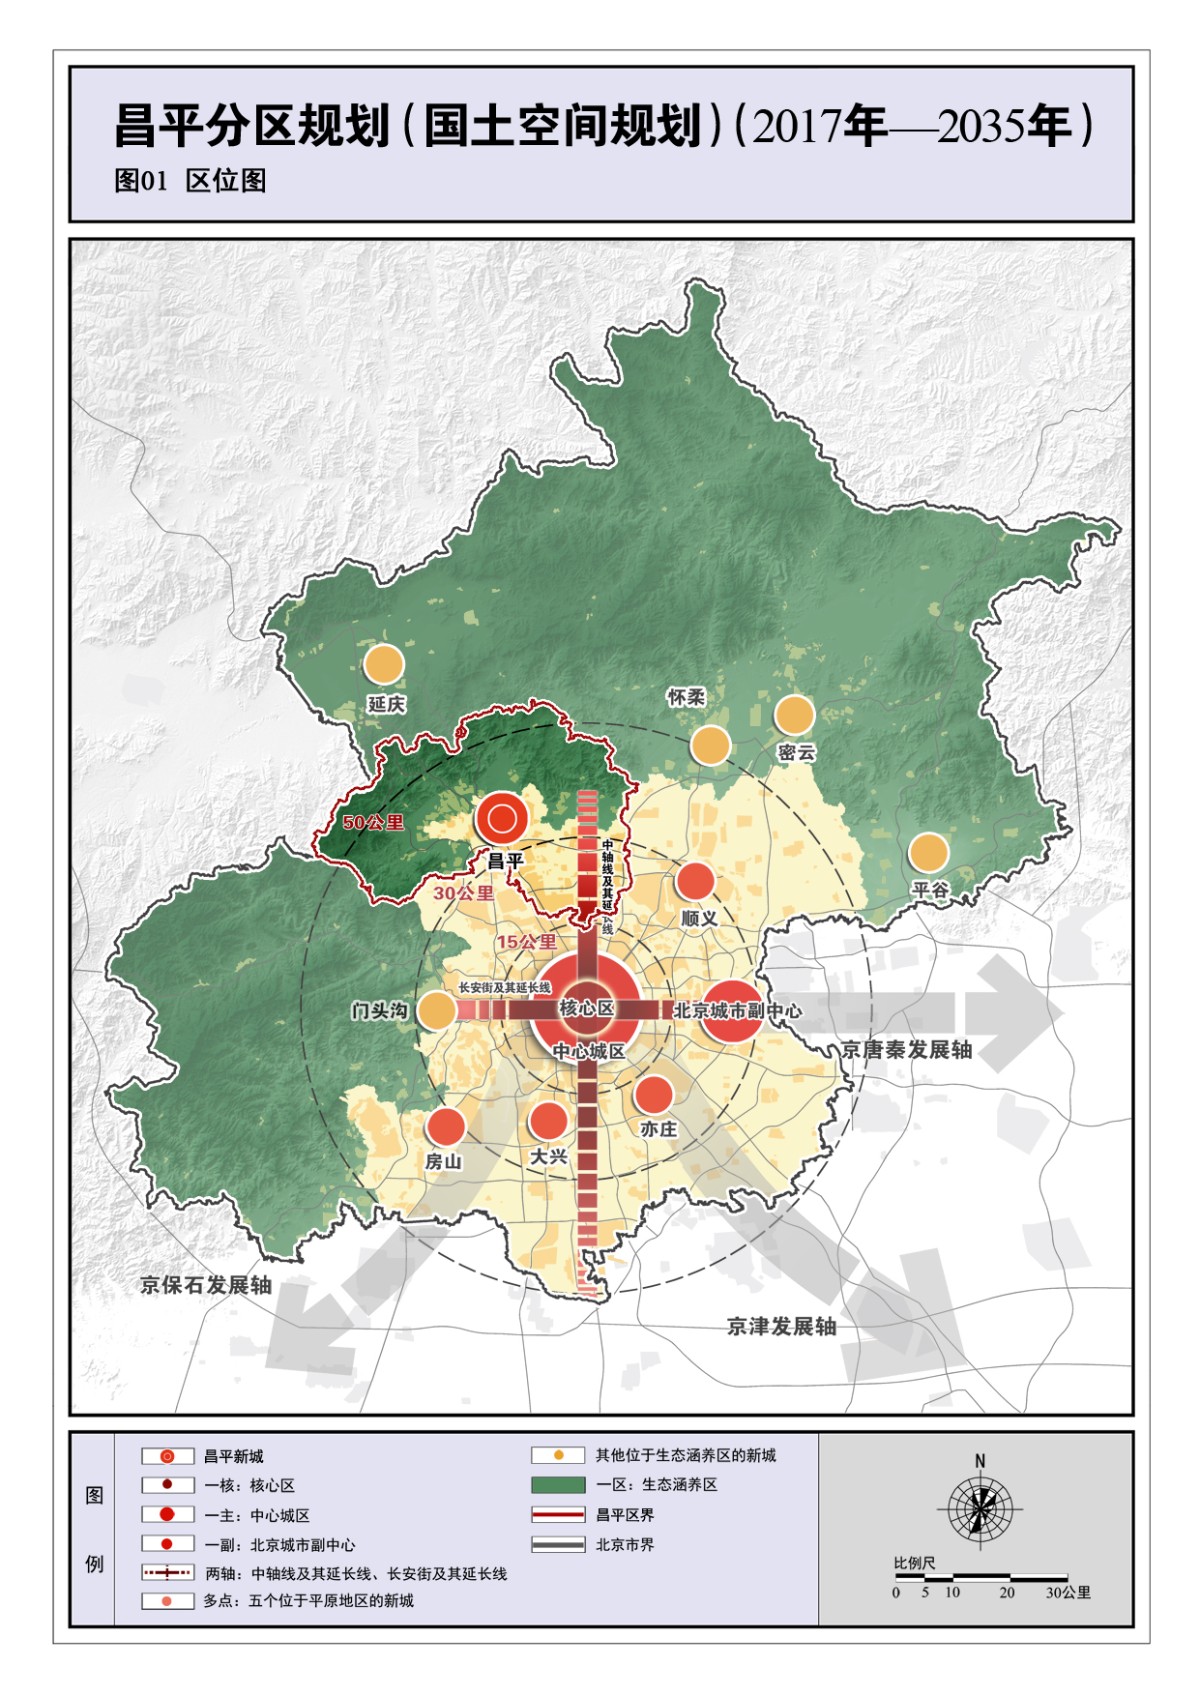 昌平新城东区规划图图片